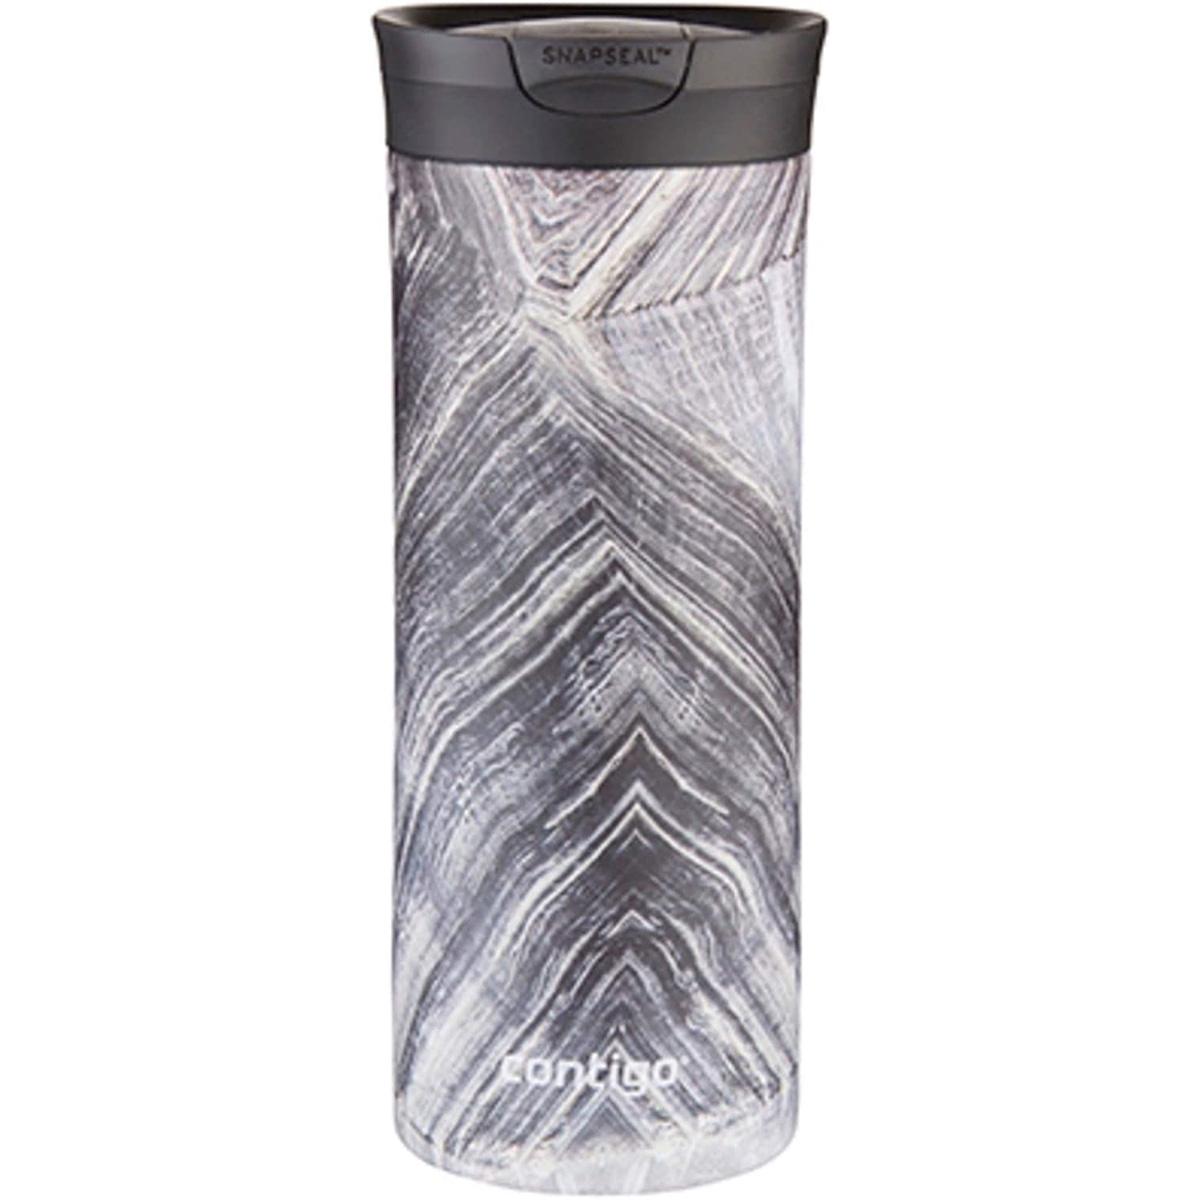 20oz Contigo Couture Snapseal Insulated Travel Mug for $8.40